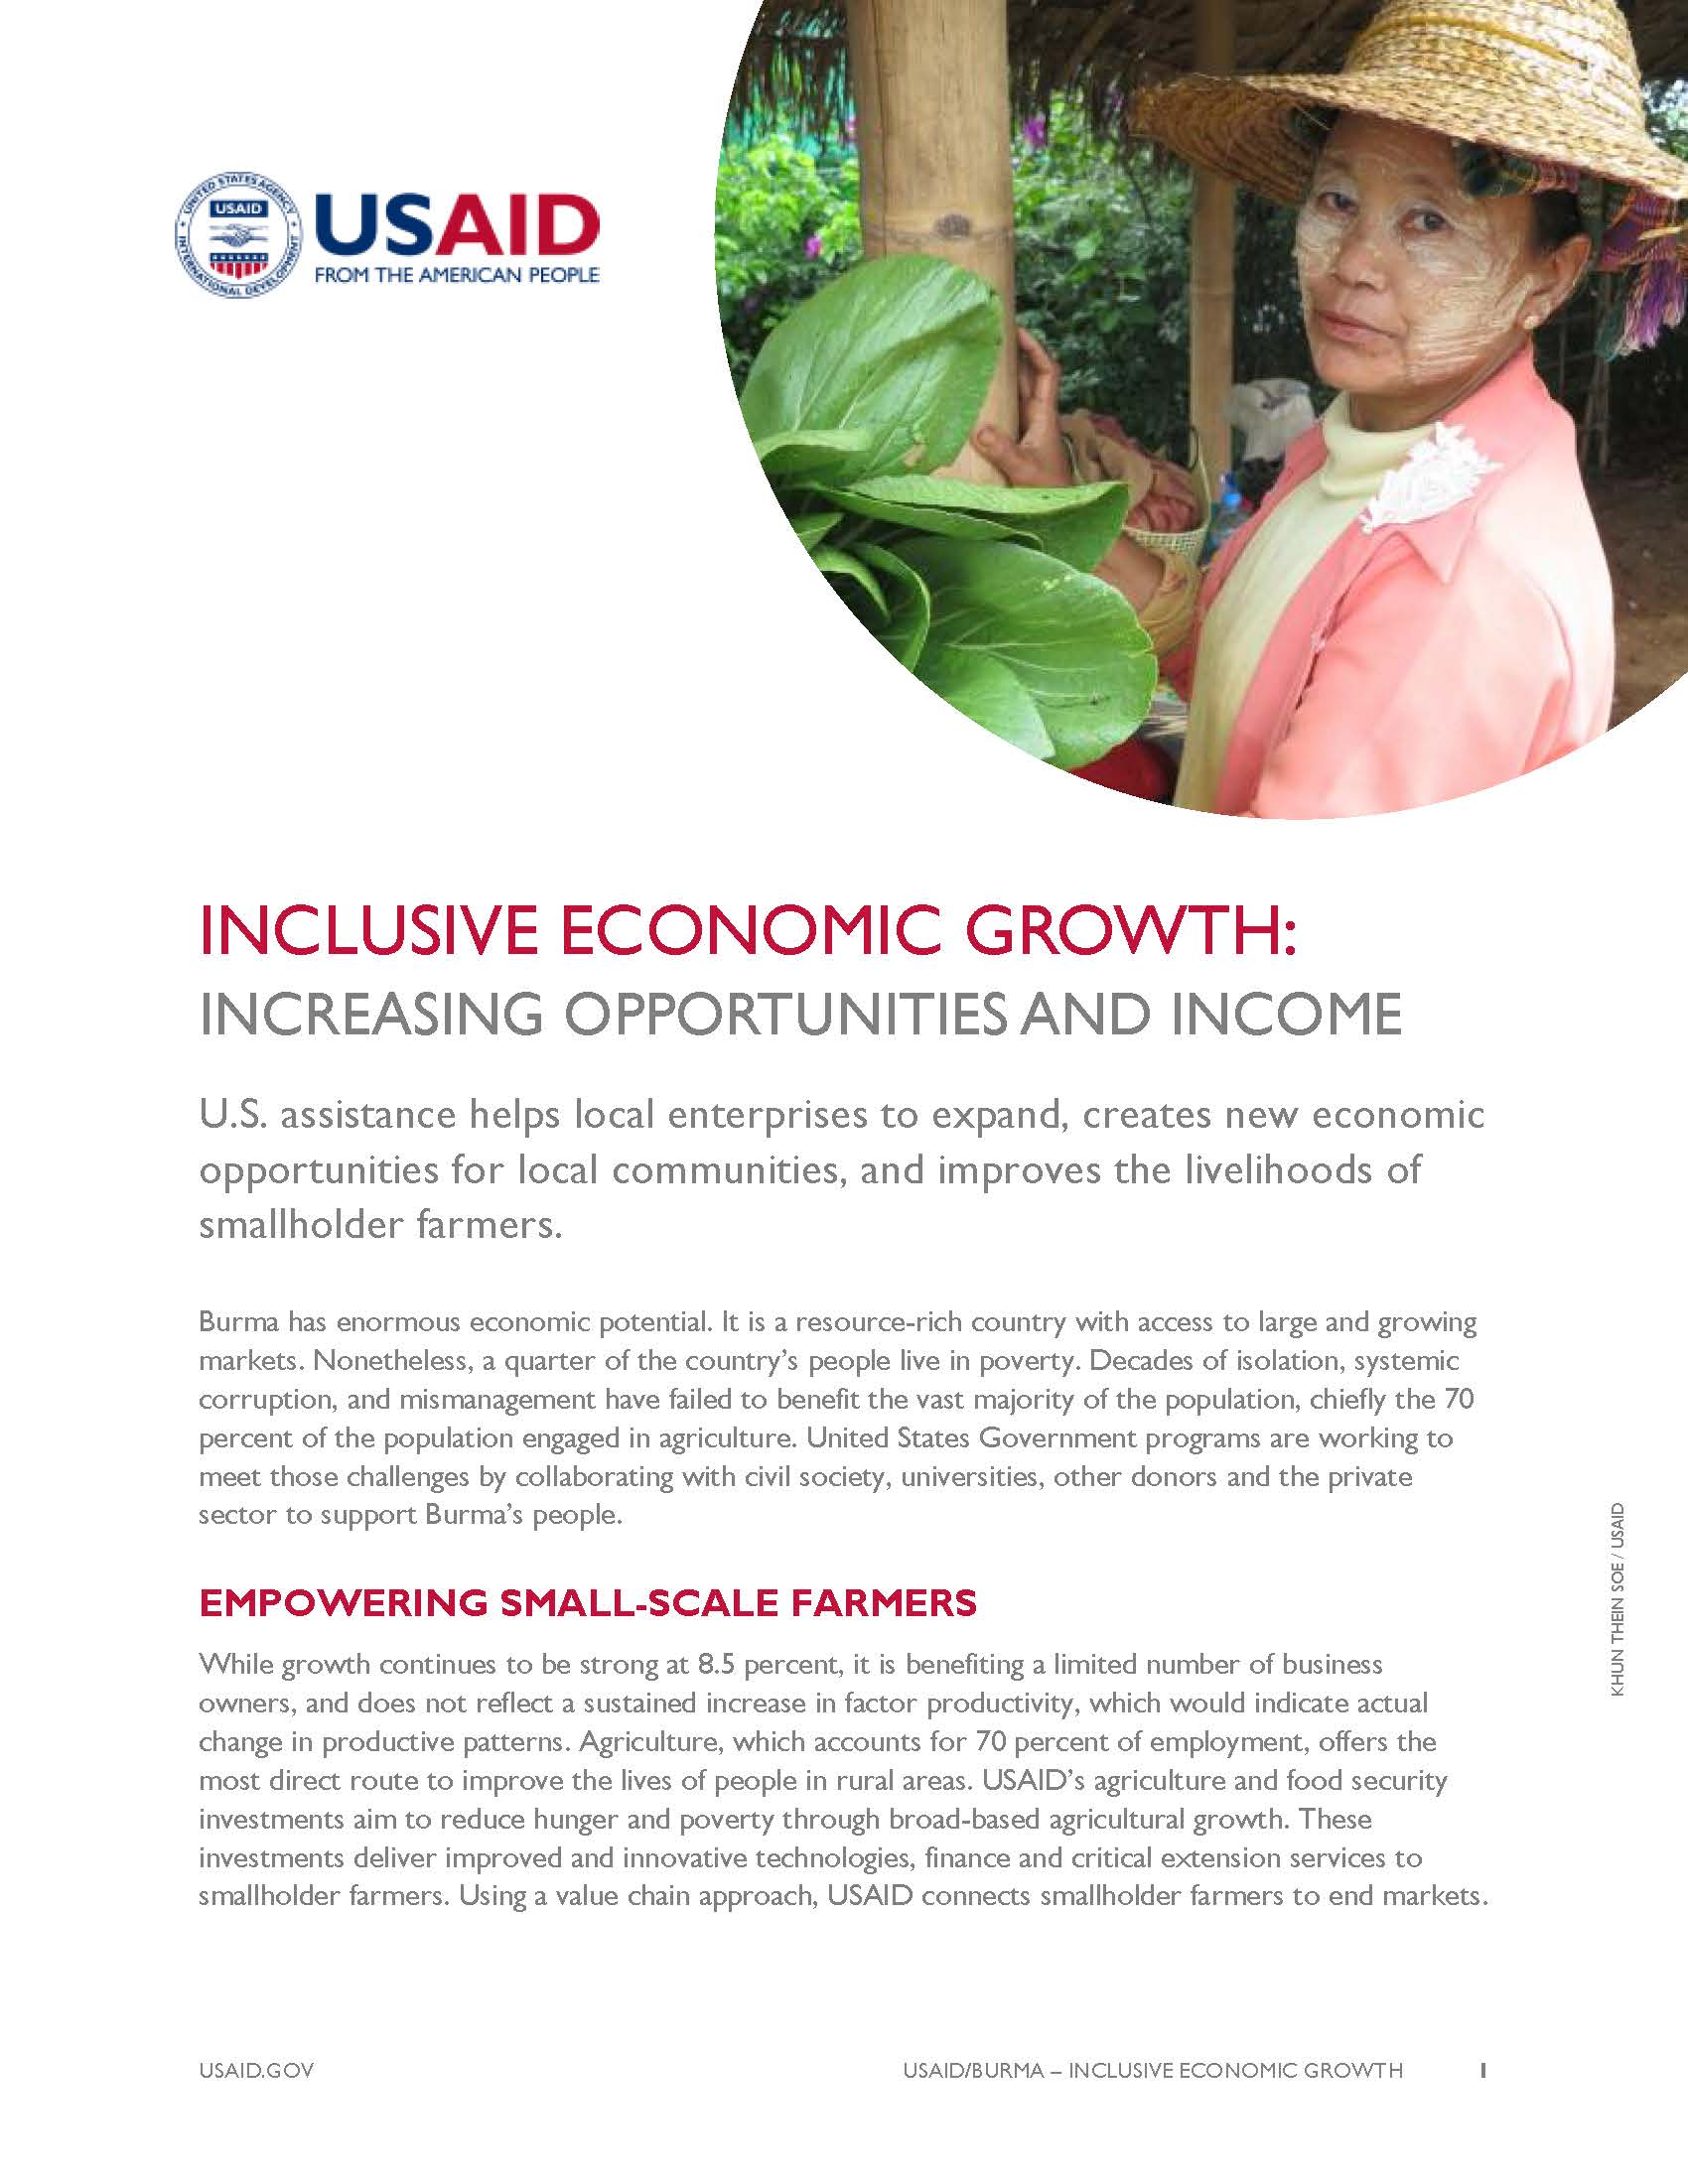 Burma - Inclusive Economic Growth Fact Sheet